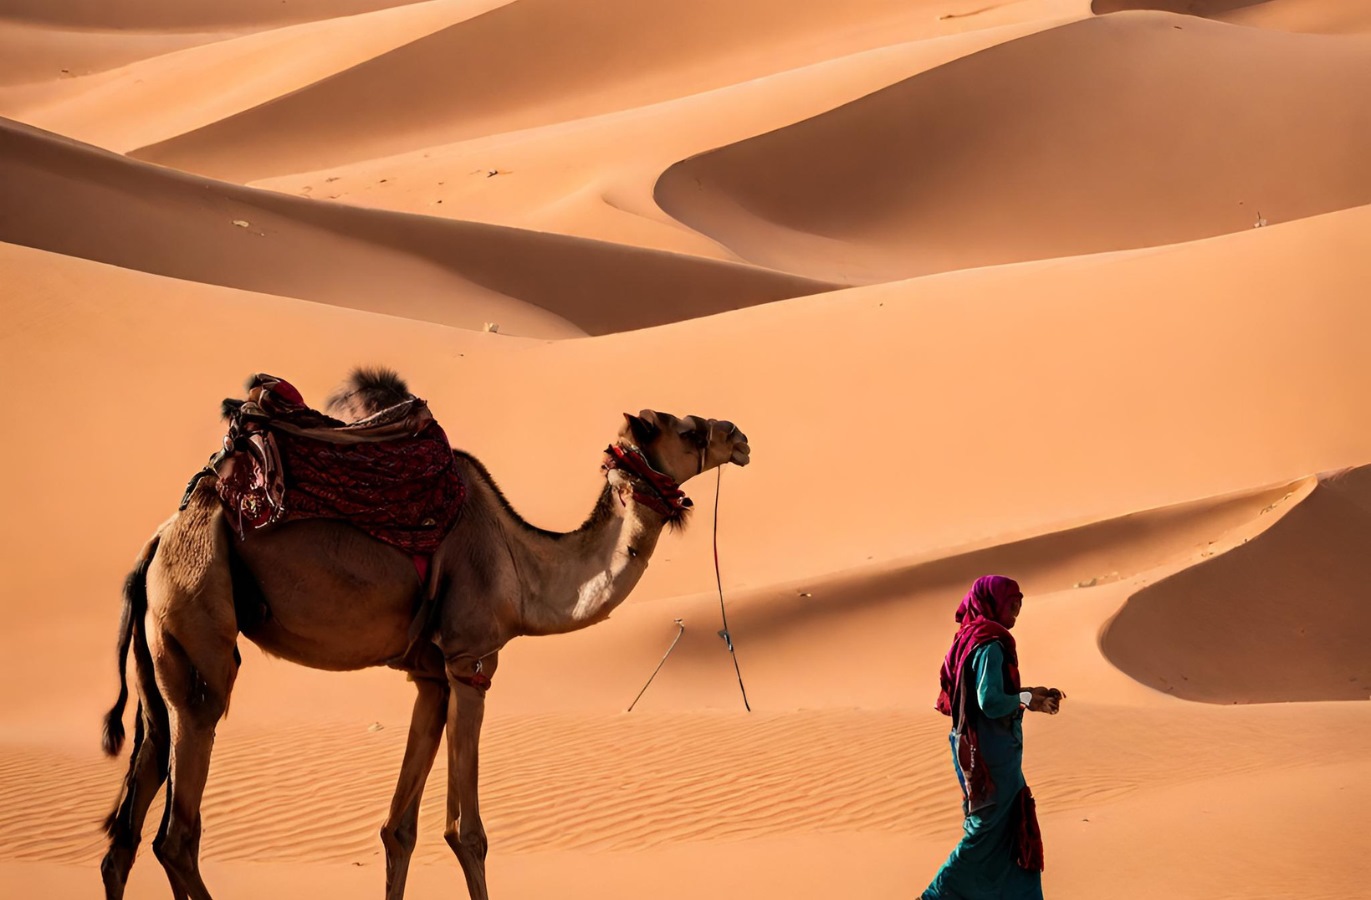 「世界の祭り・イベント巡り：魅惑のモロッコ砂漠音楽祭体験」 | TREND WORDAI